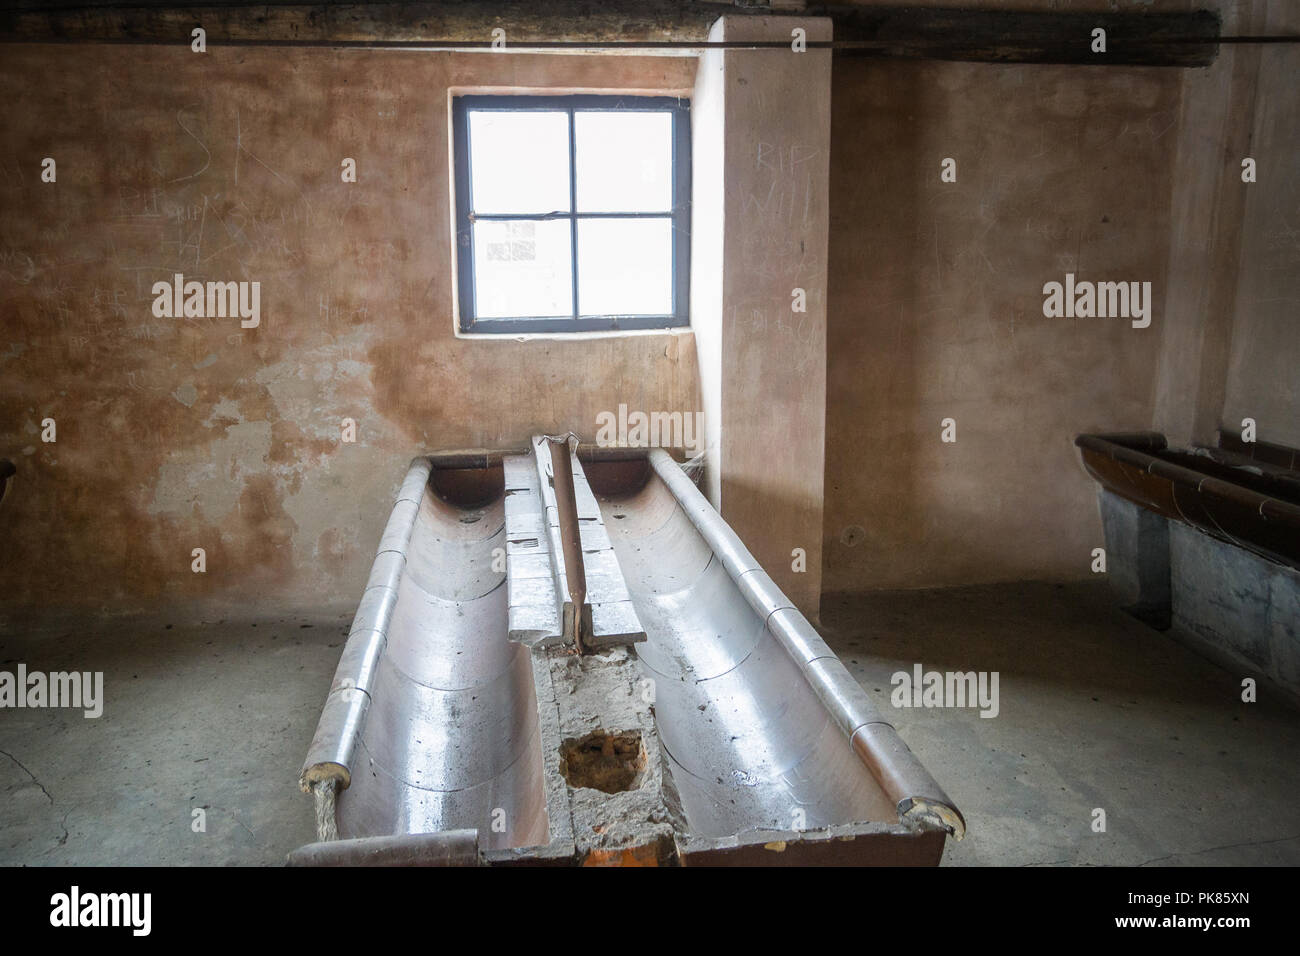 Auschwitz, Pologne - 16 Février 2018 : Intérieur de la Caserne du Camp de concentration d'Auschwitz Birkenau Banque D'Images